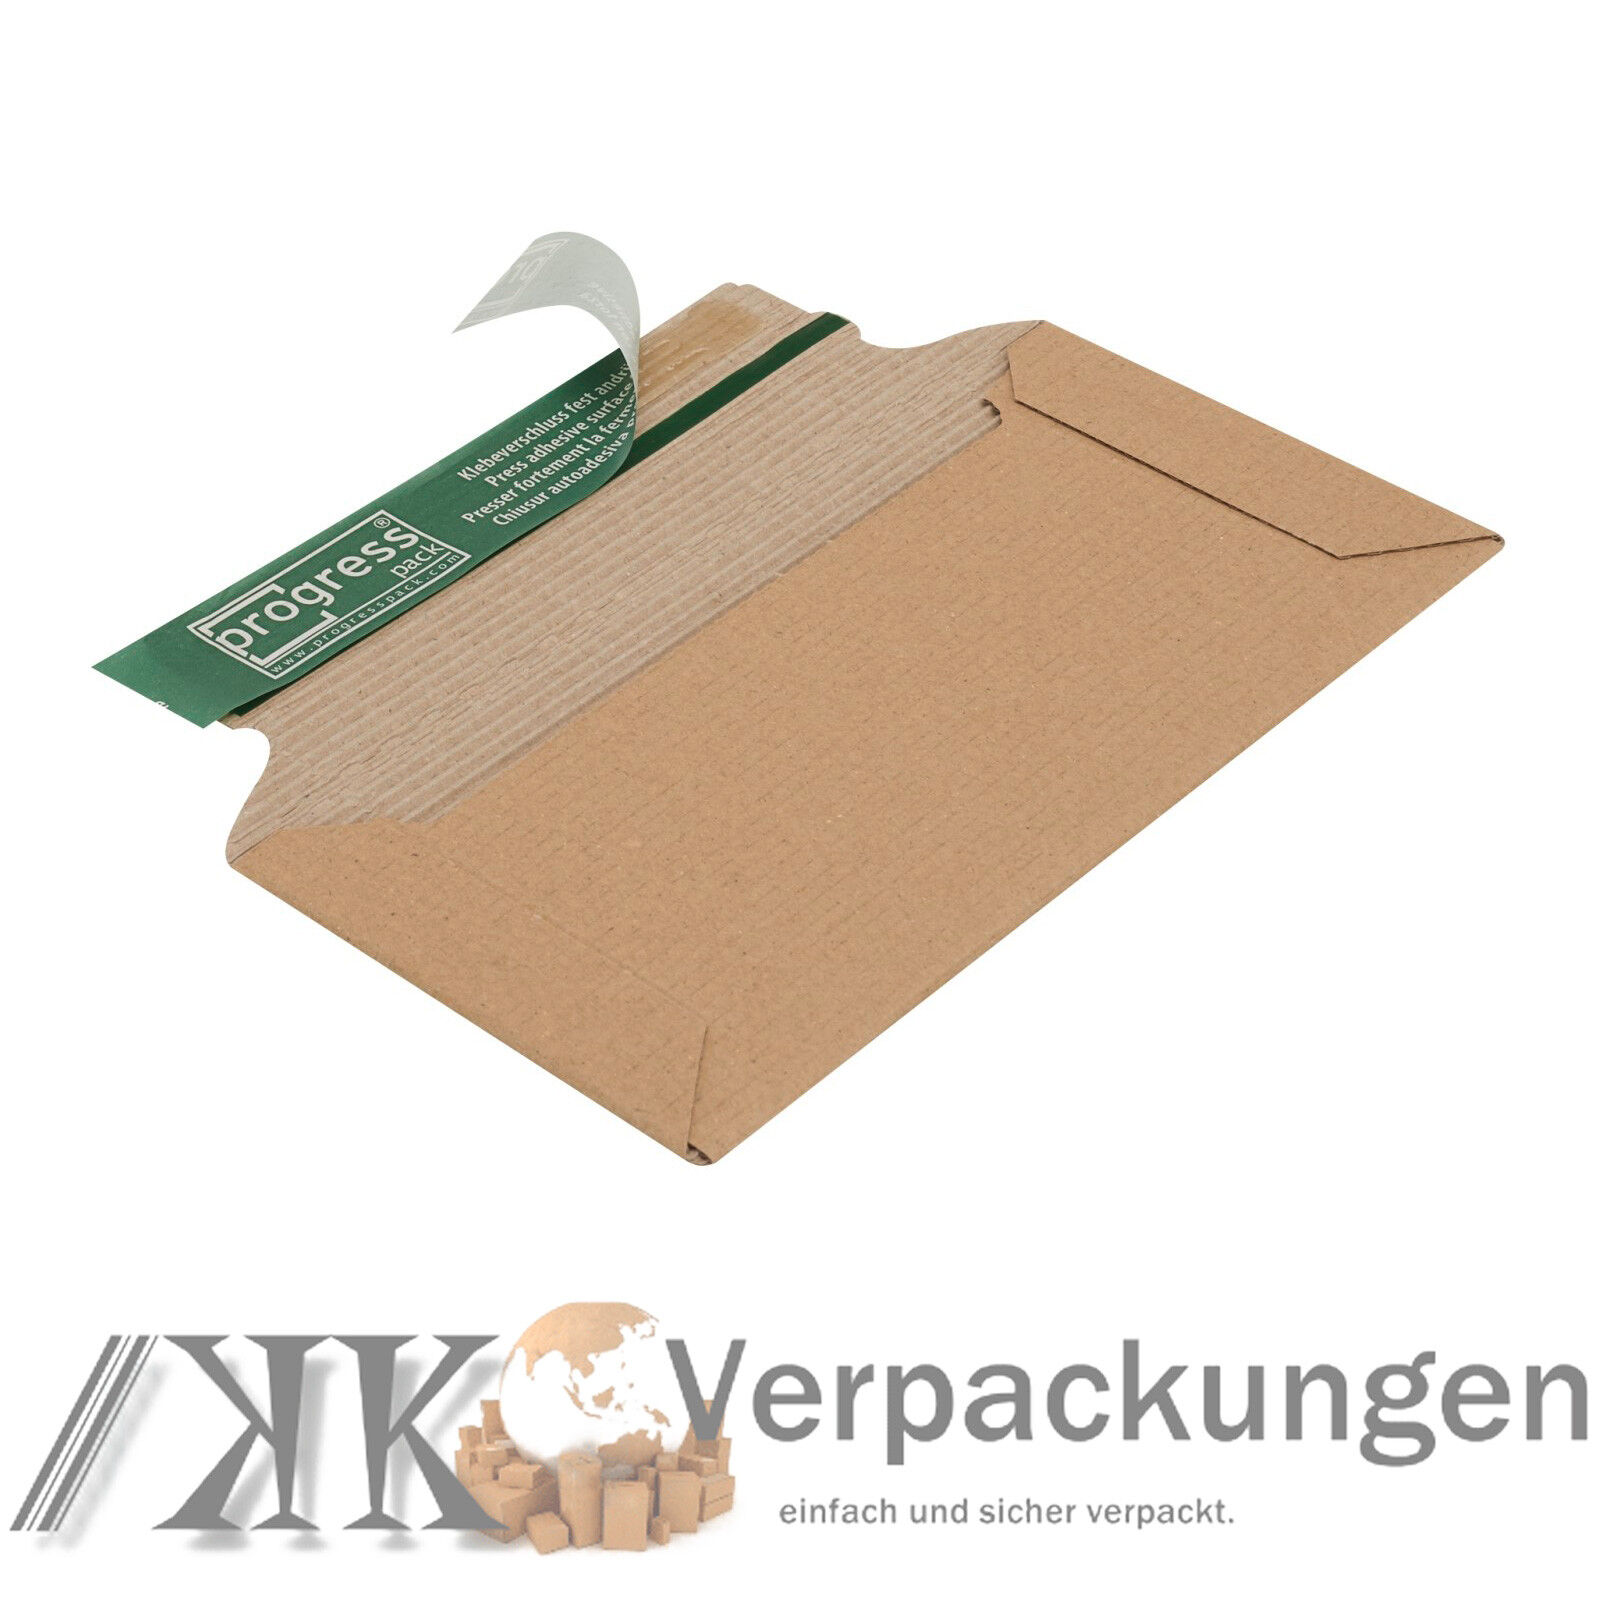 Details zu  1000 Versandtaschen aus offener Wellpappe DIN lang 220 x 110 x 32 mm Kartons 2022 Frühling / Sommer